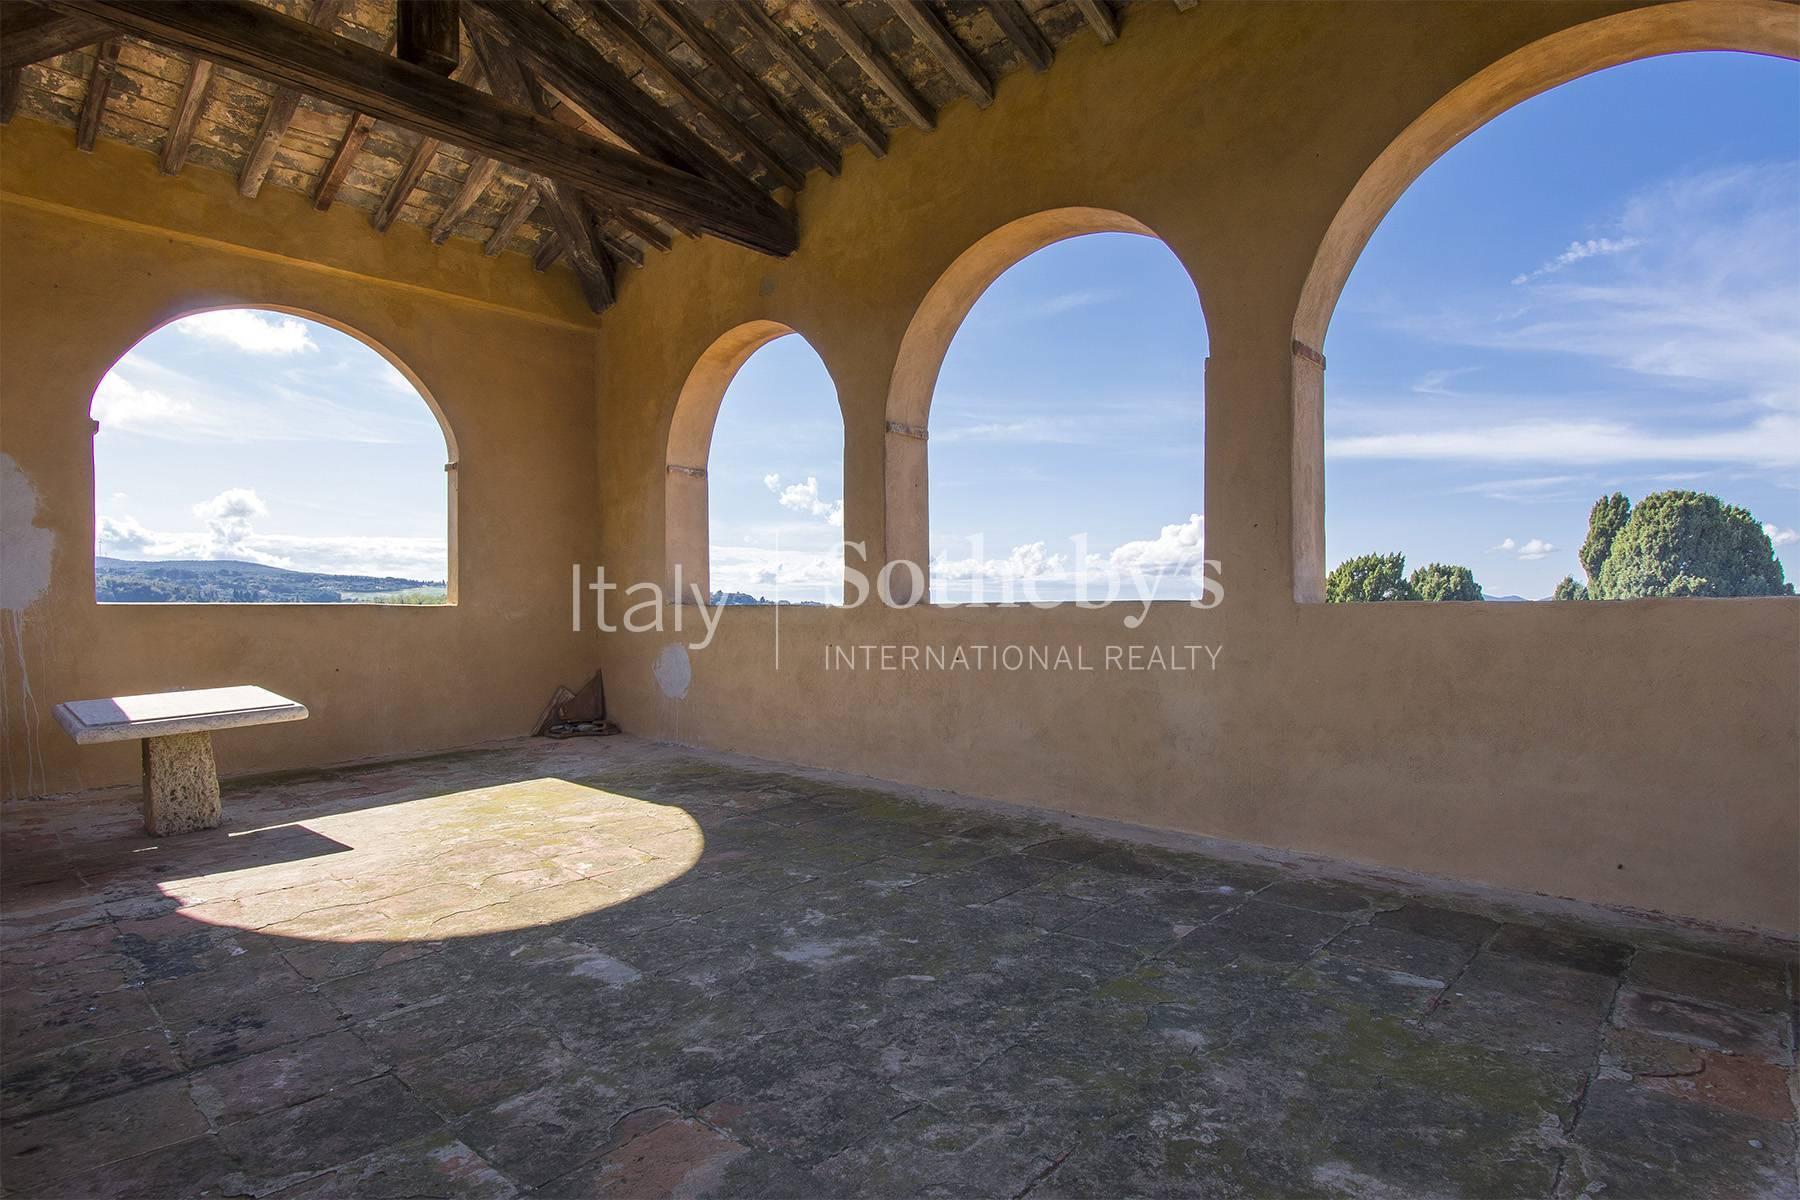 Affascinante Villa Medicea sulle colline Toscane - 4